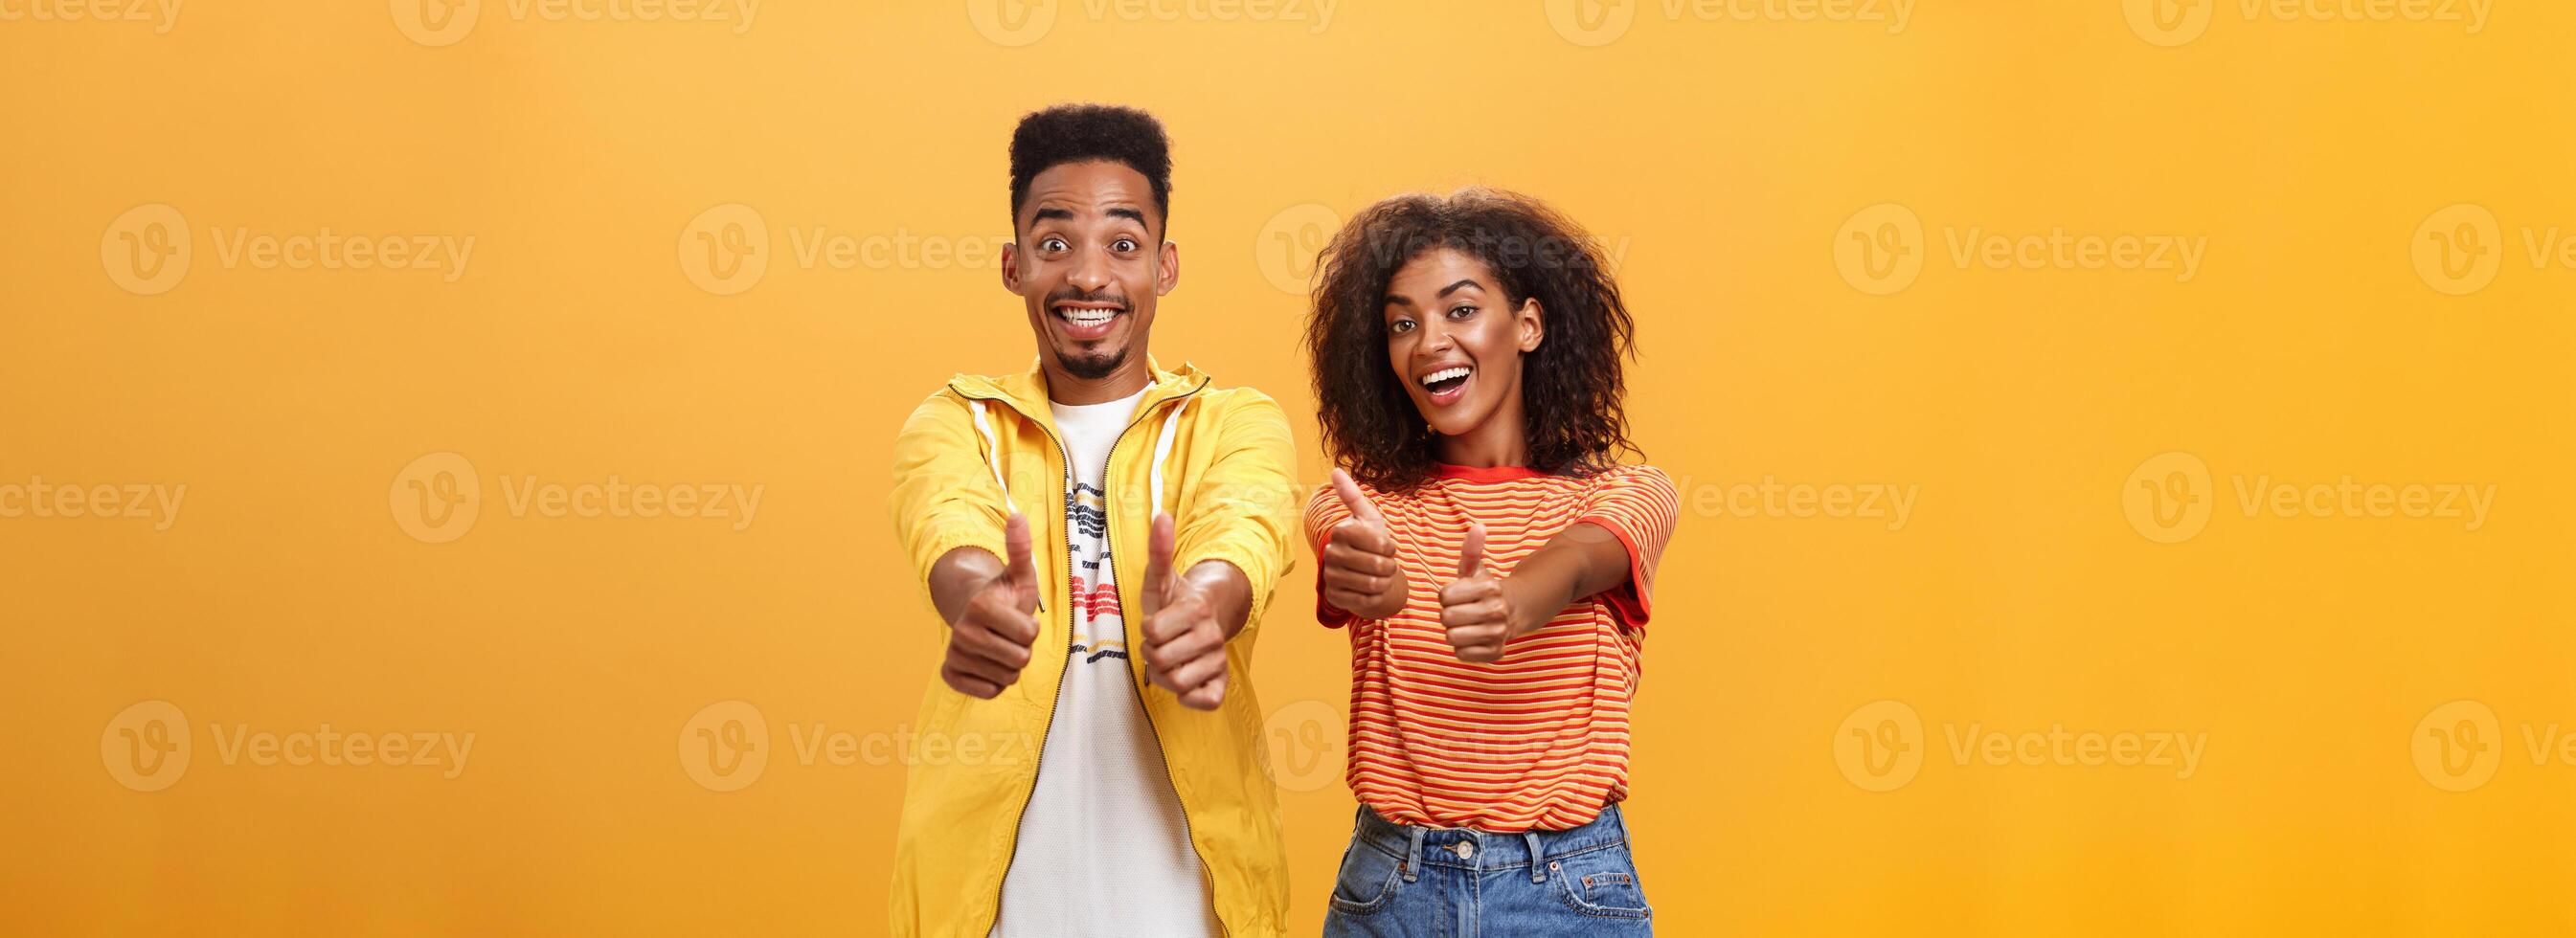 två vänner tycka om perfekt och grymt bra planen. porträtt av glad vänligt utseende optimistisk afrikansk amerikan kvinna och manlig som visar tummen upp i godkännande och avtal gest leende brett foto